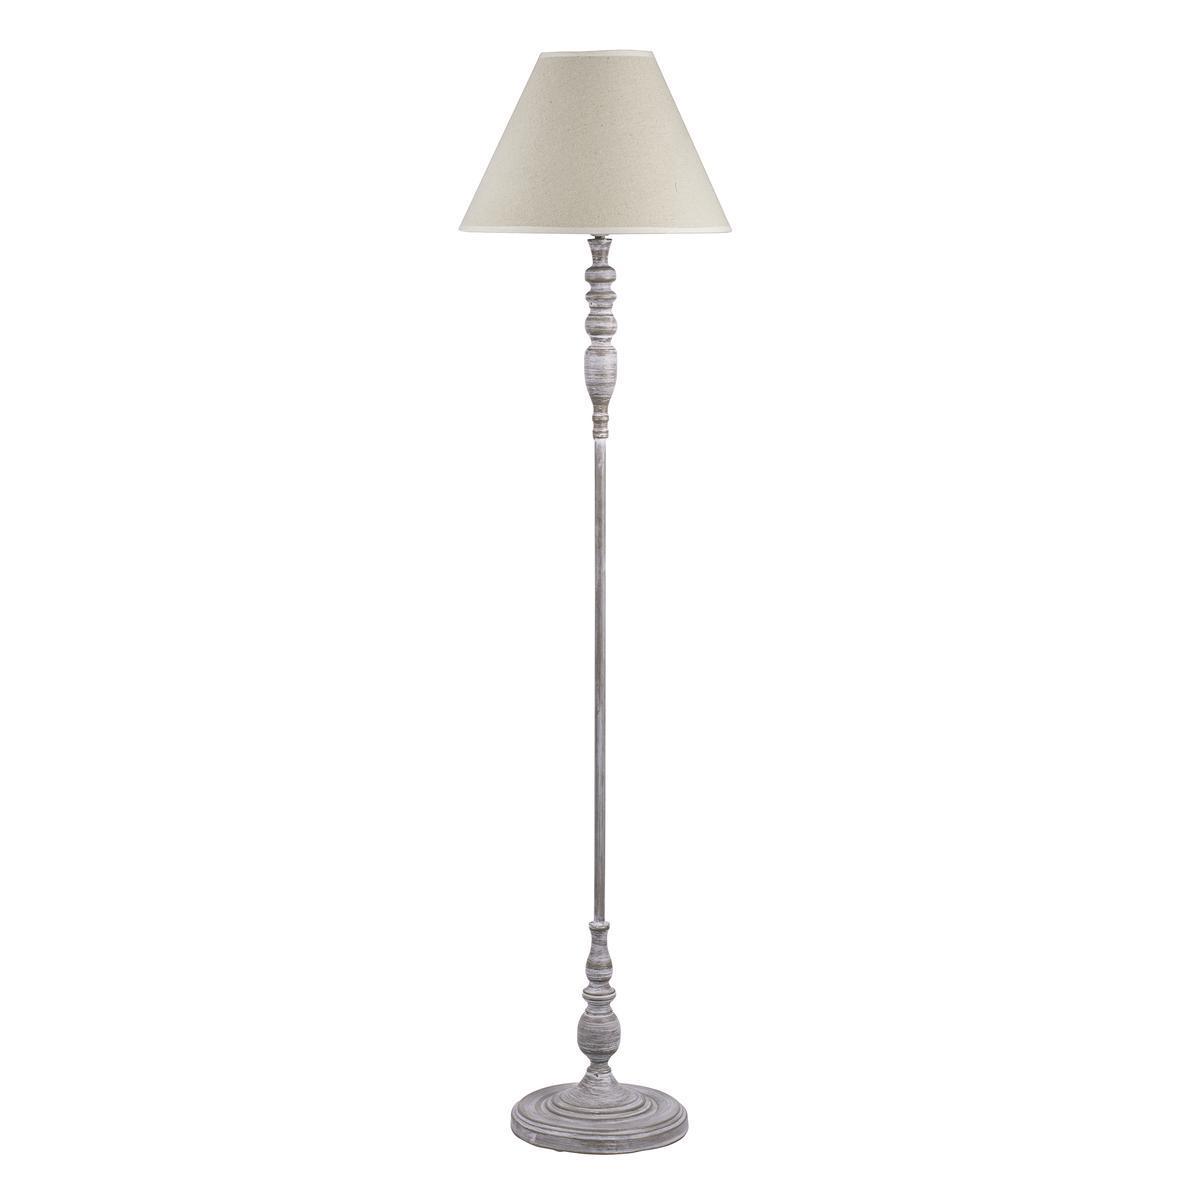 Lampe sur pied - Fin, lin et polyester - Ø 38 x H 154 cm - Blanc